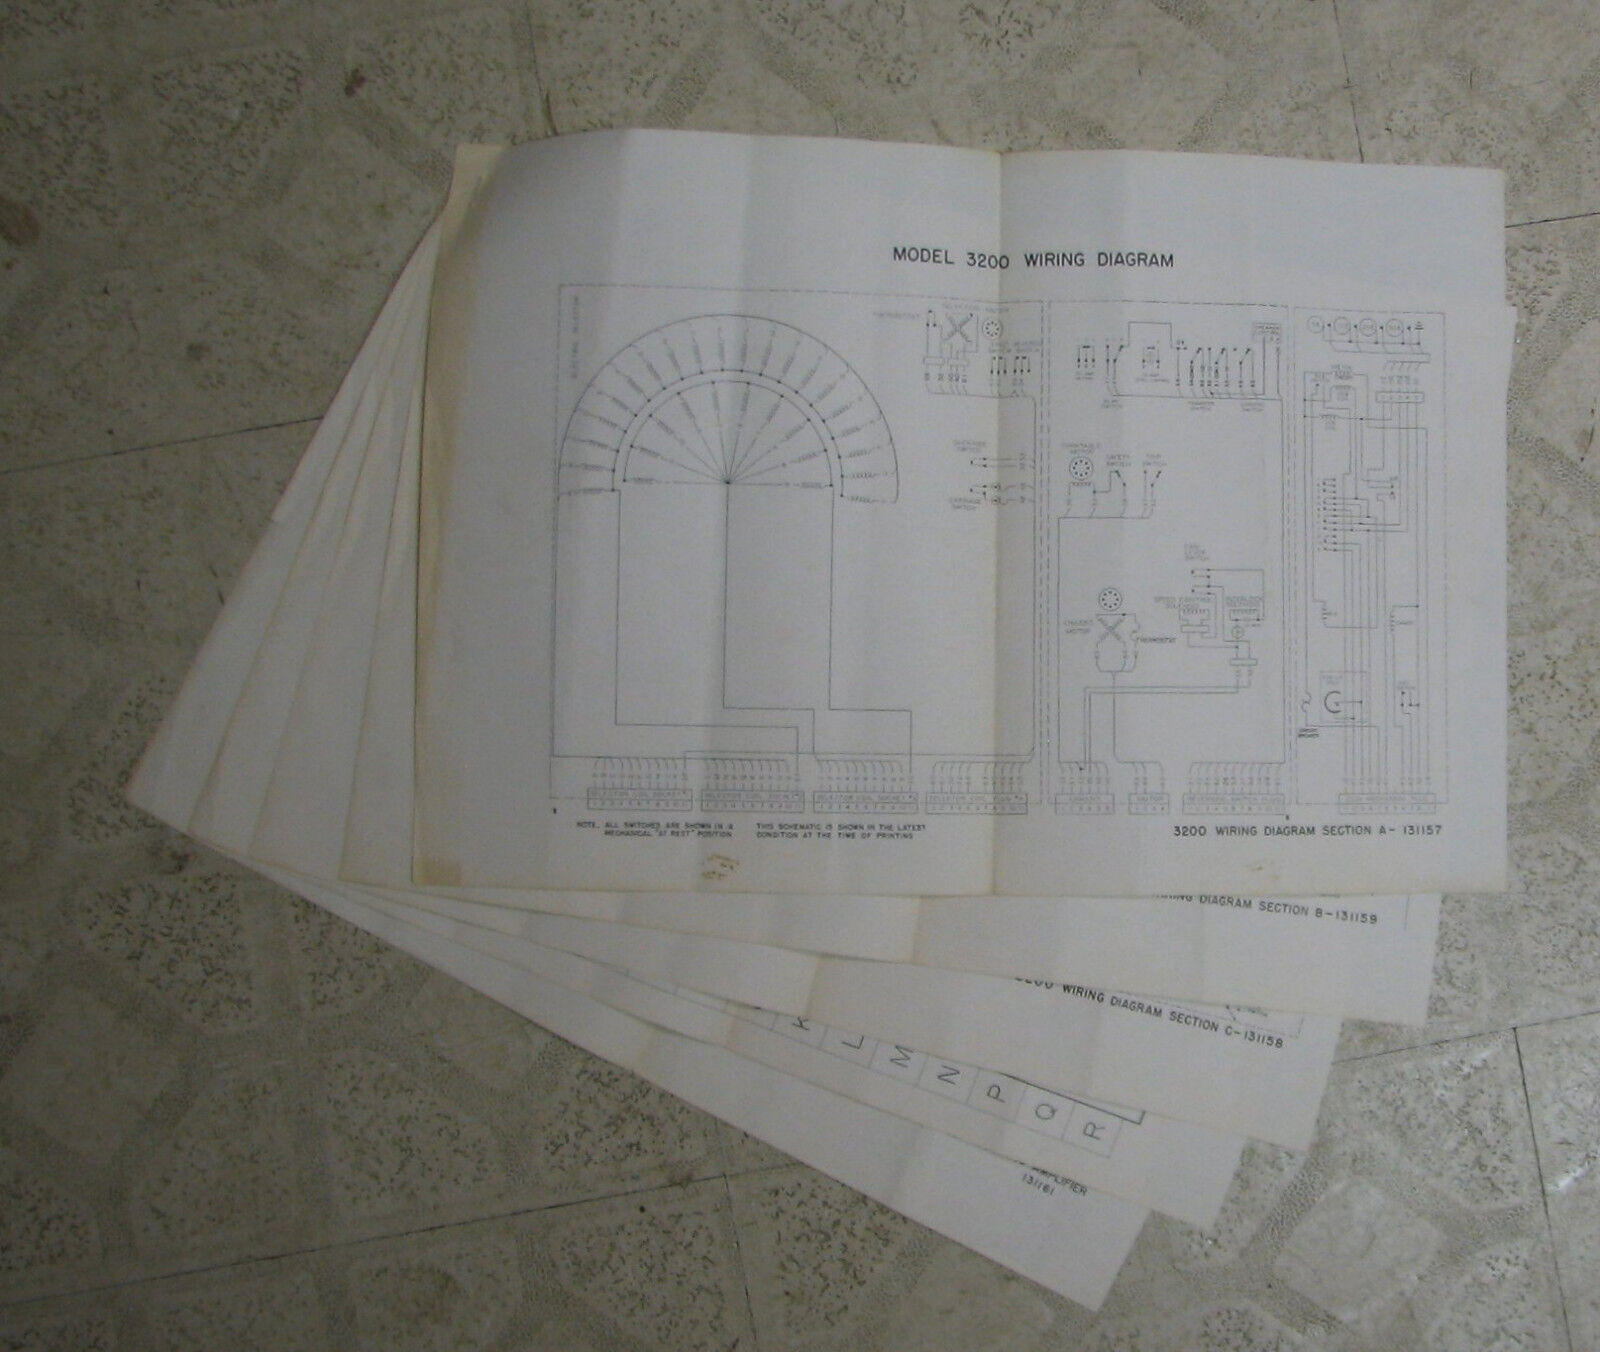 Wurlitzer #3200 Wiring Diagram, Schematic + schematic 548 Amplifier: 5 originals